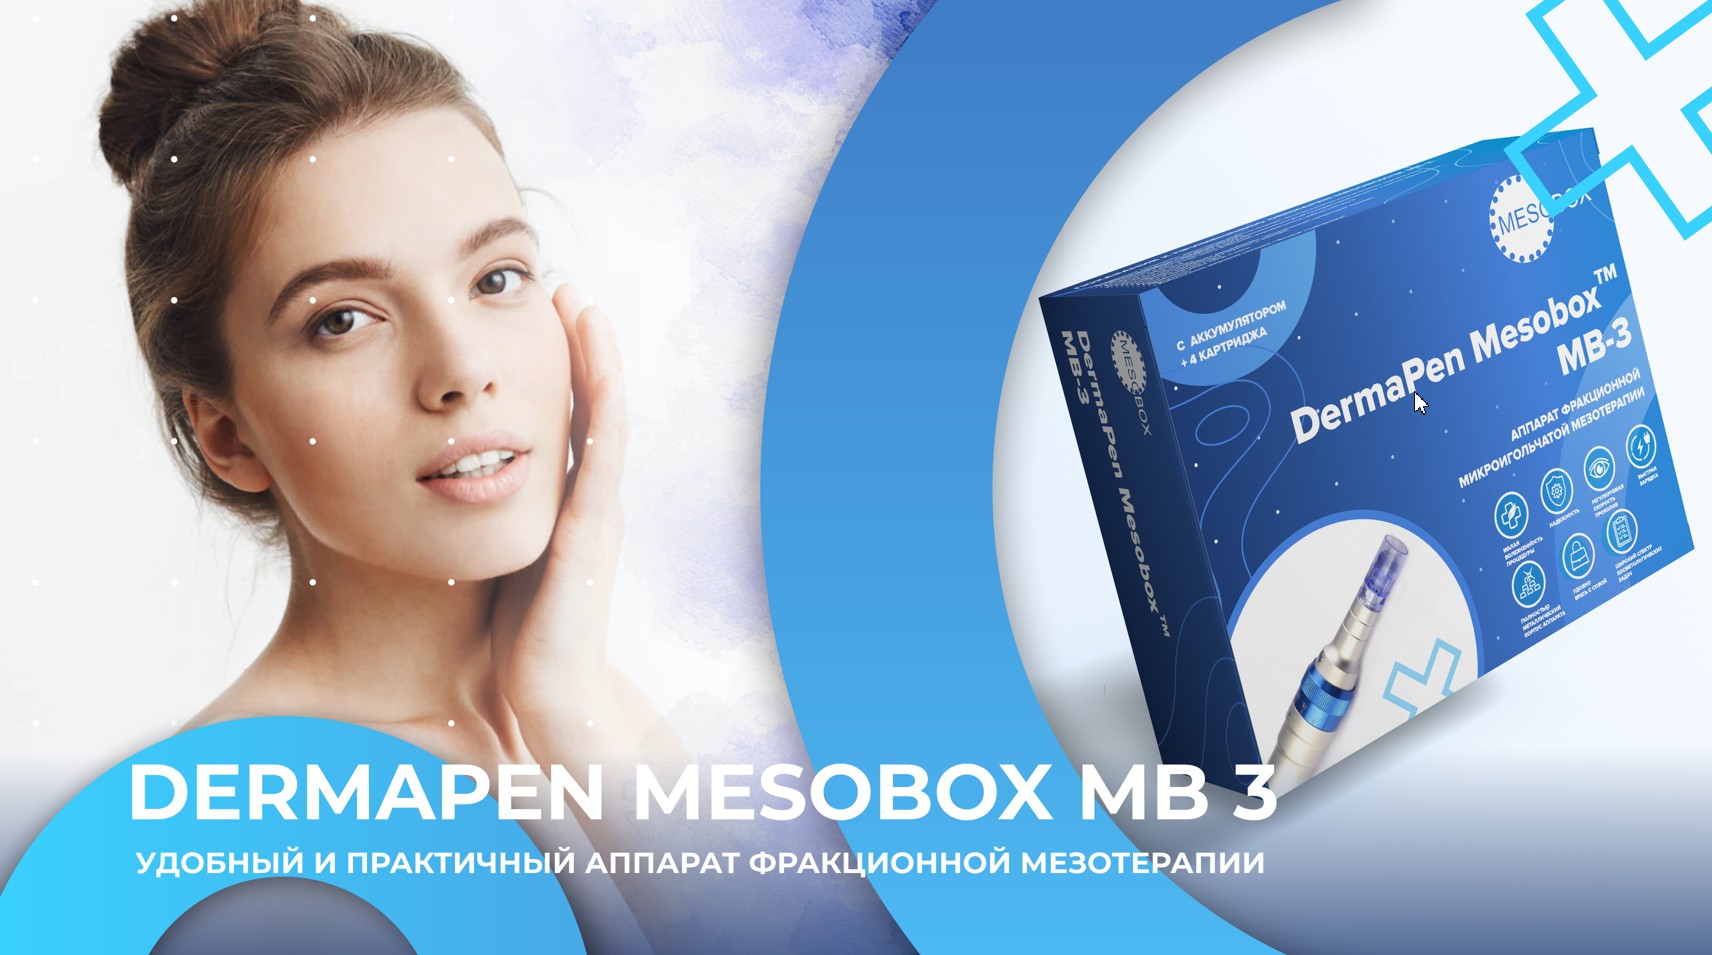 Dermapen MESOBOX MB 3 - профессиональный аккумуляторный аппарат фракционной мезотерапии